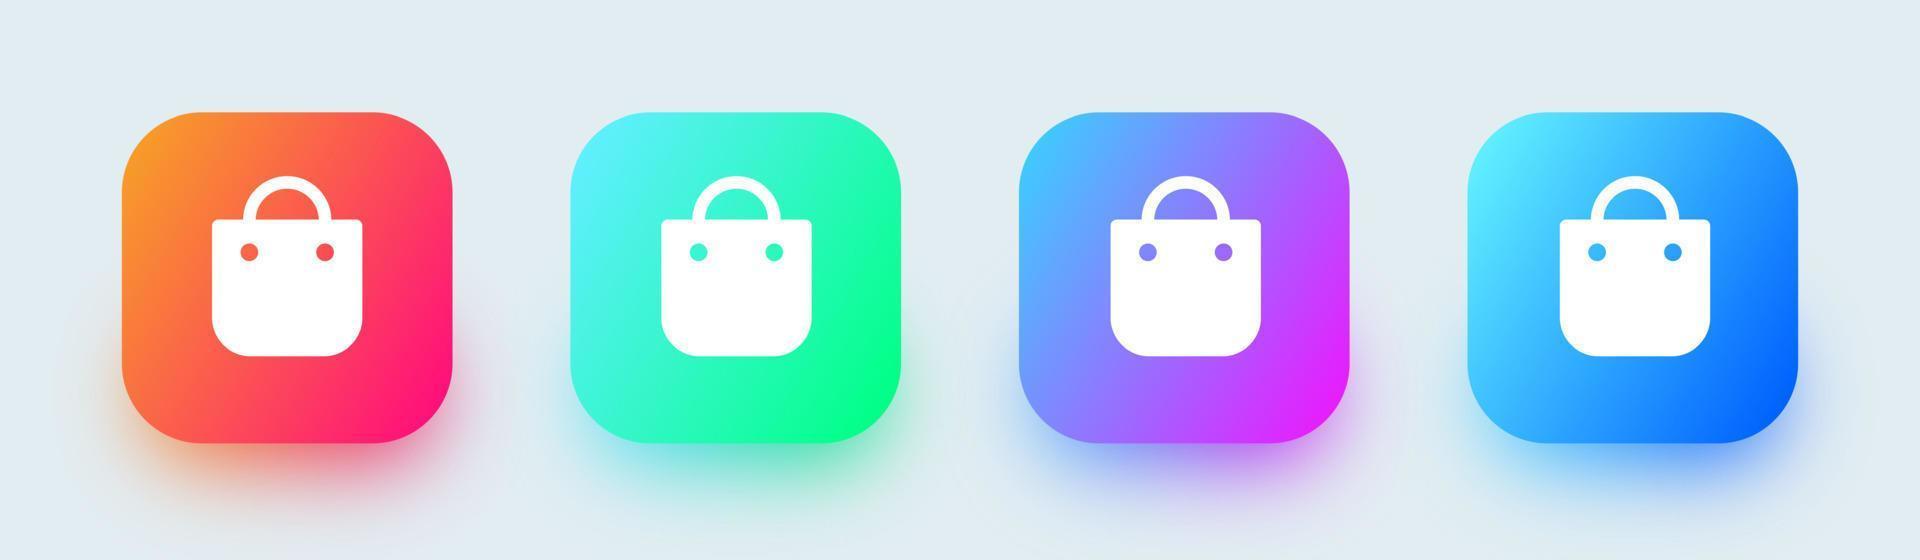 icône solide de sac à provisions dans des couleurs dégradées carrées. signe de sac de magasin pour l'interface d'applications web ou commerciales. vecteur